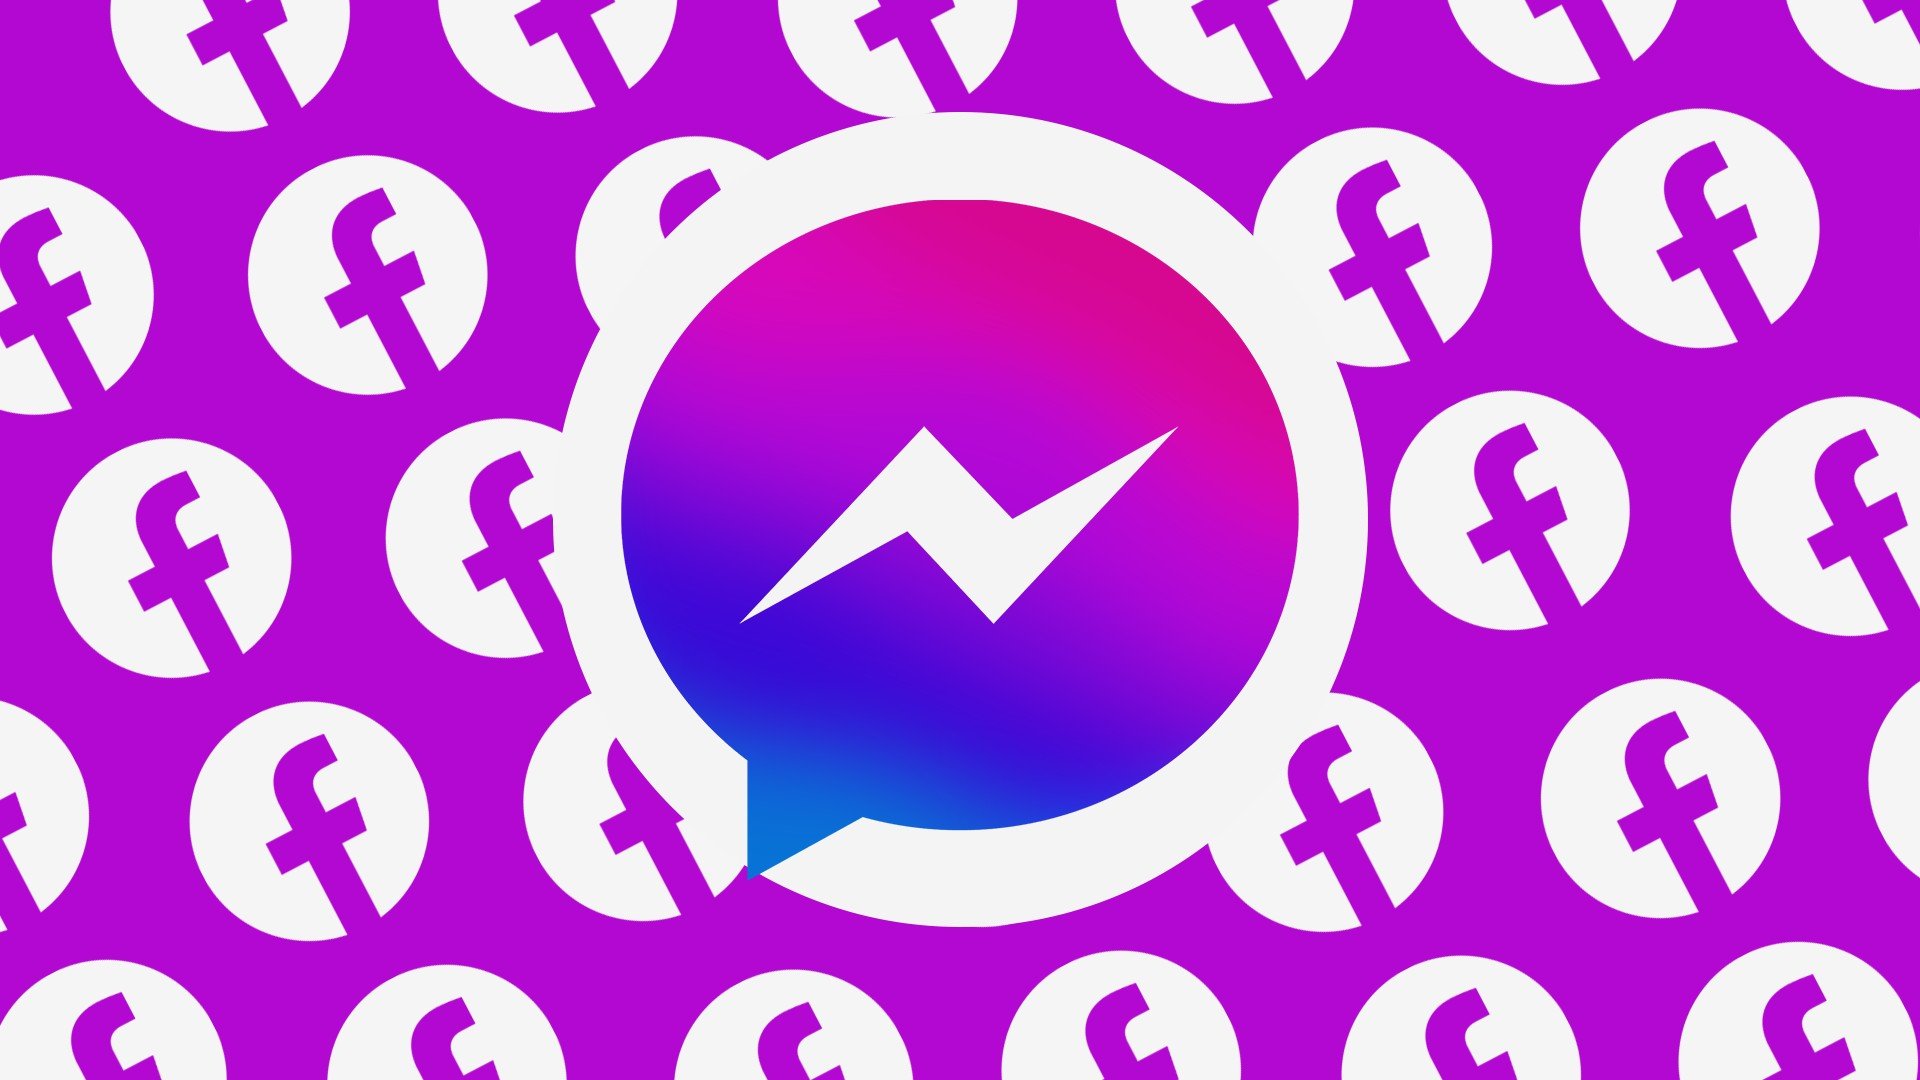 Como acessar jogos secretos no Messenger do Facebook 